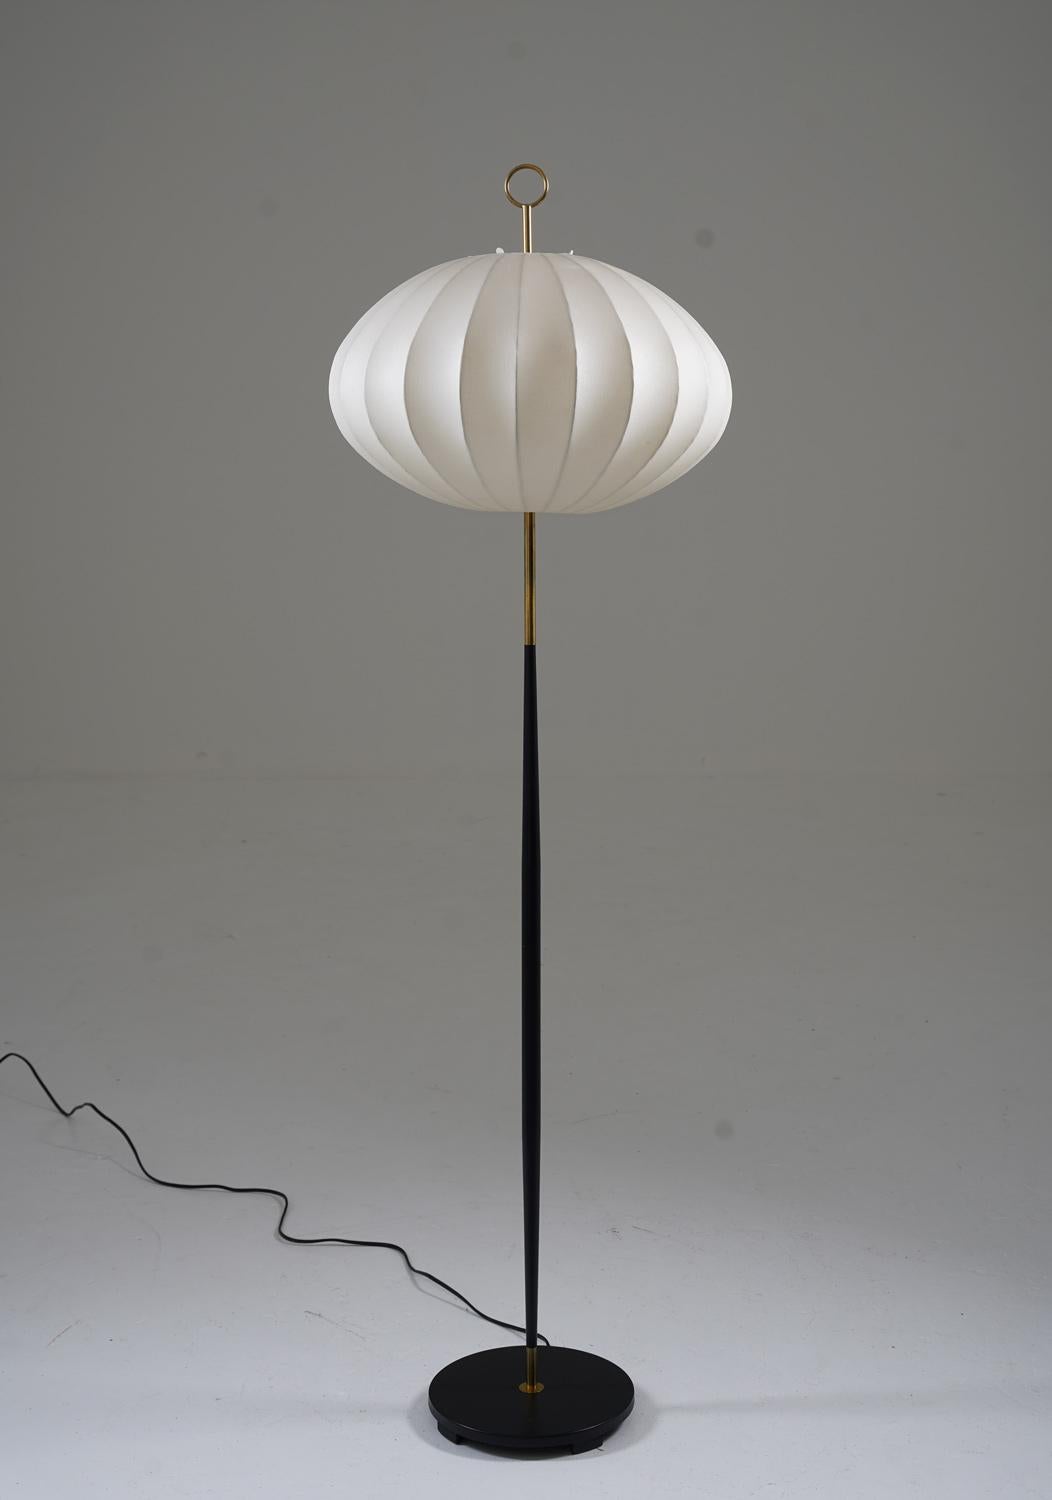 Superbe lampadaire d'ASEA, Suède, années 1950.
Belle lampe au design minimaliste avec de beaux détails. La base a sa peinture noire d'origine et est dans un état proche de l'état neuf. La source lumineuse est cachée par un abat-jour en plastique